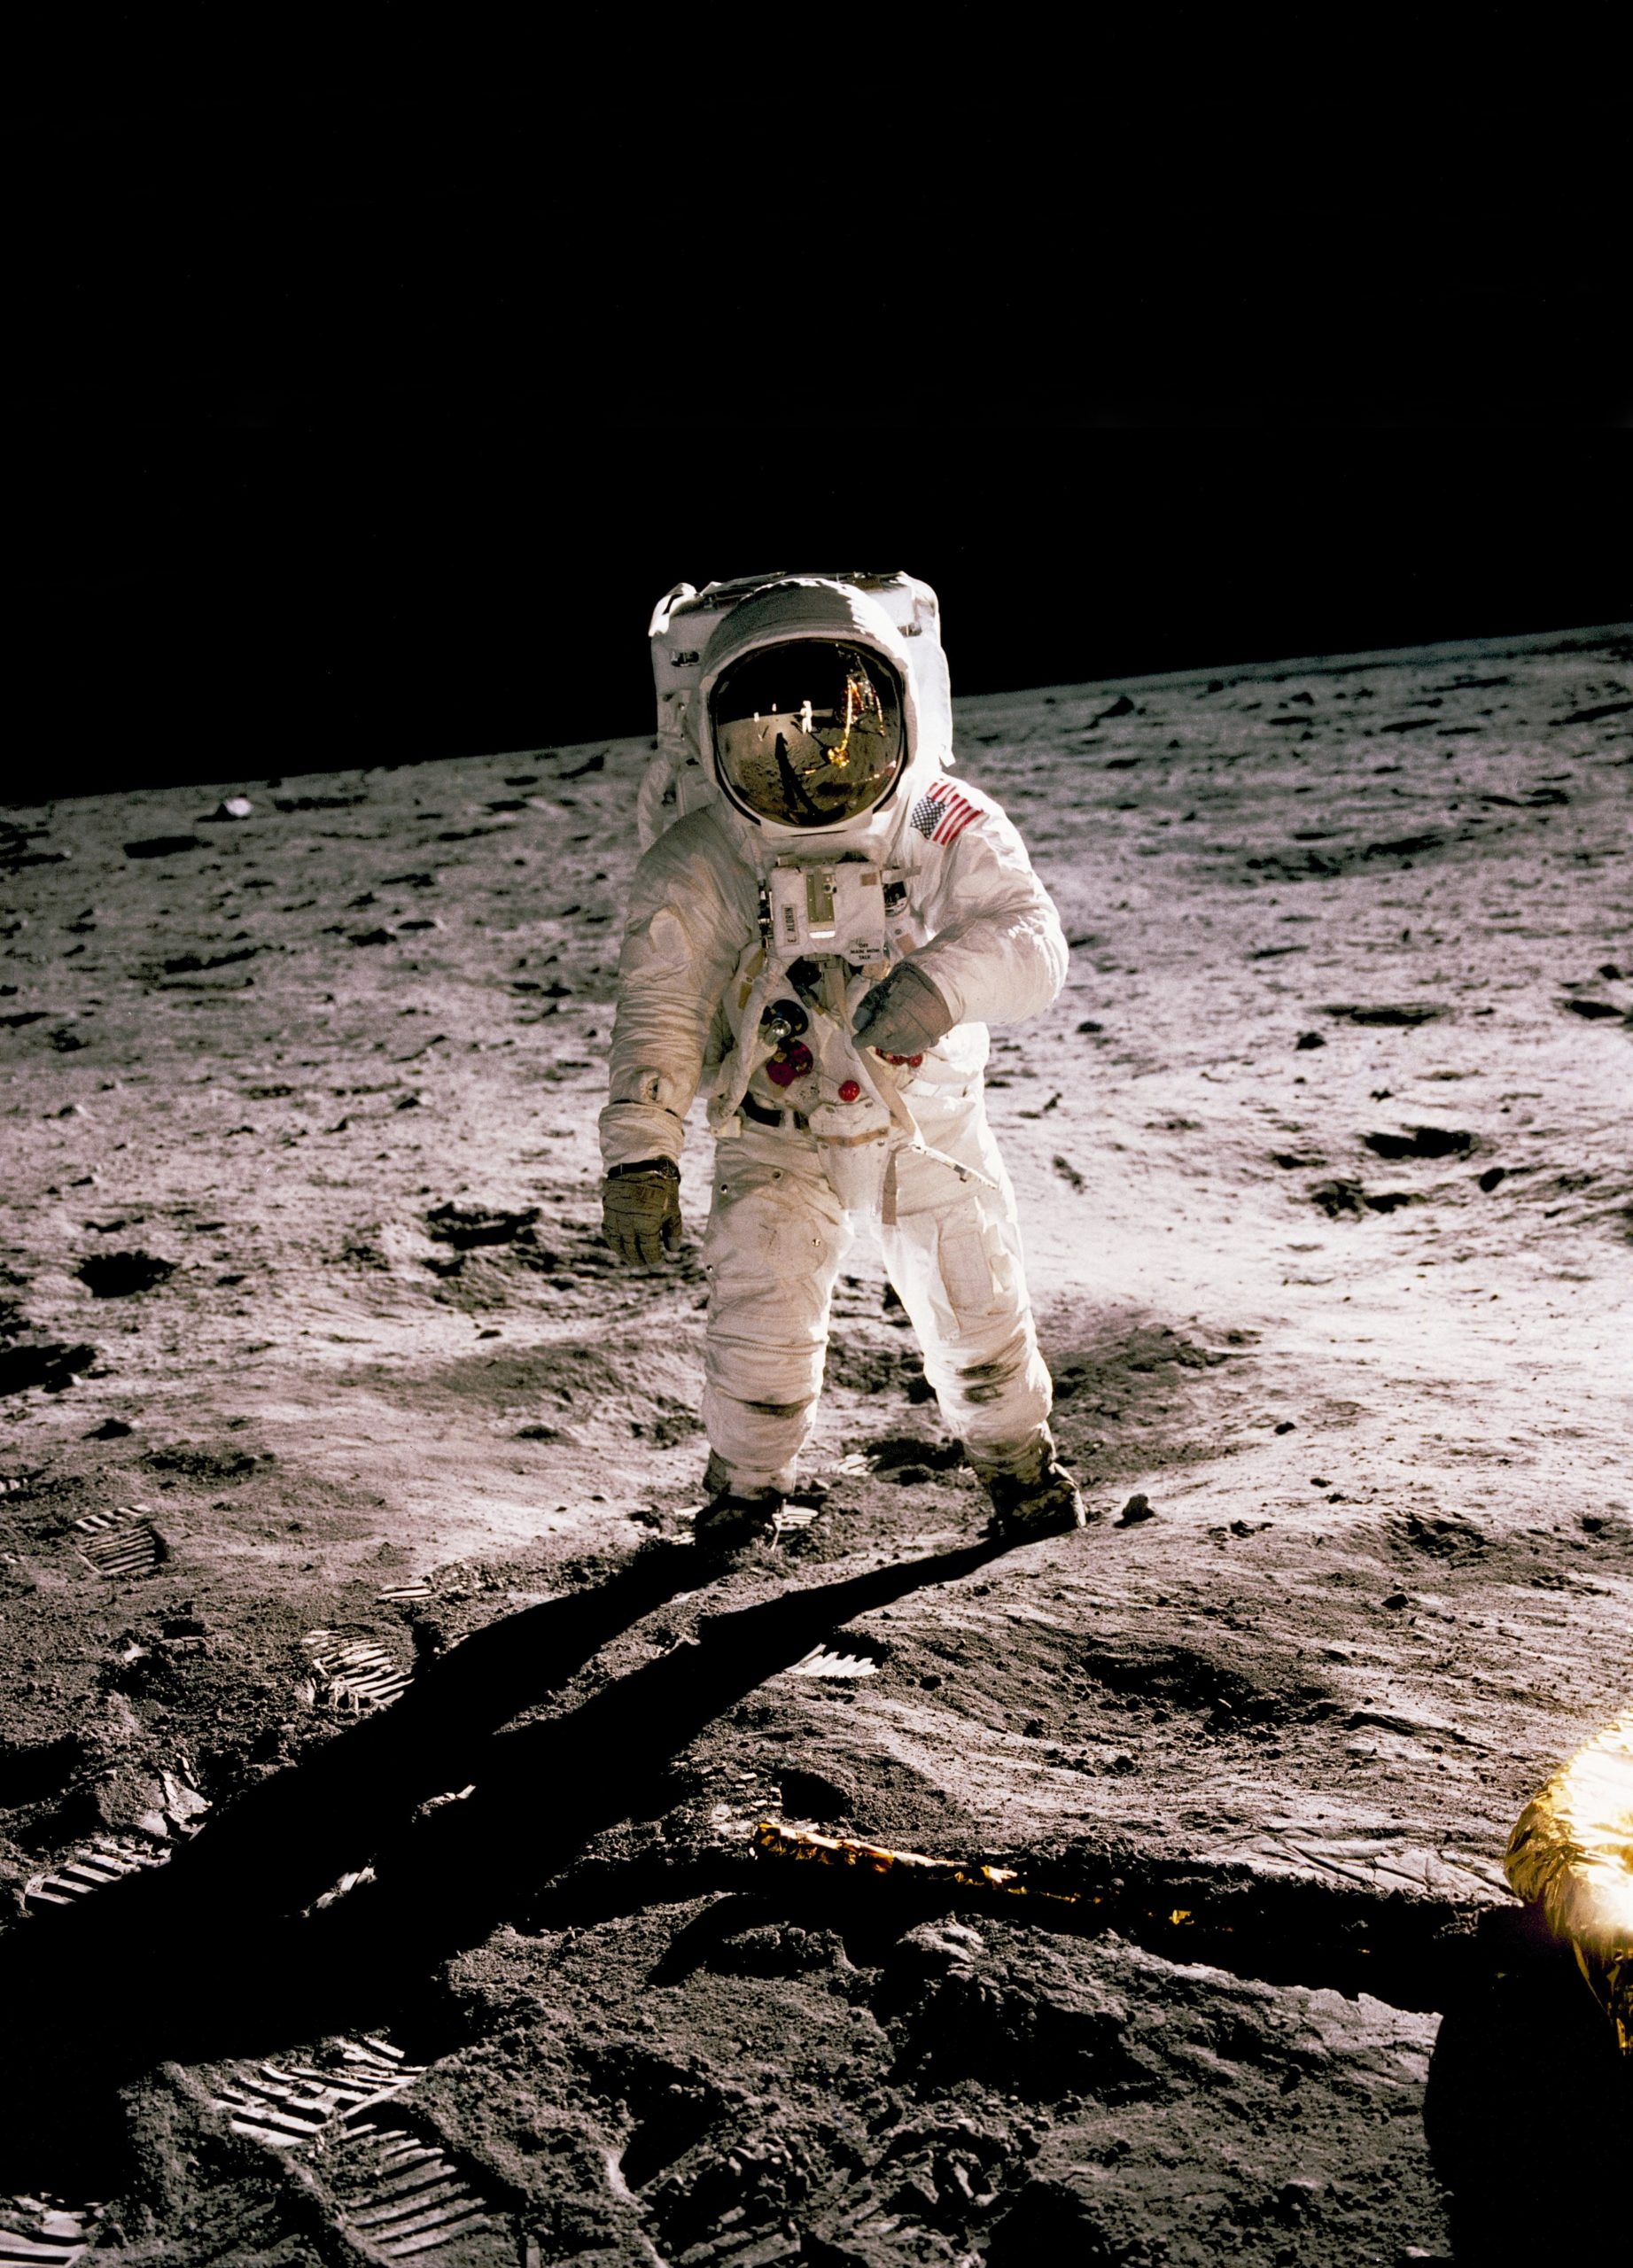 L'astronaute d'Apollo 11 Buzz Aldrin marche sur la surface de la lune le 20 juillet 1969, sur une photographie prise par Neil Armstrong.